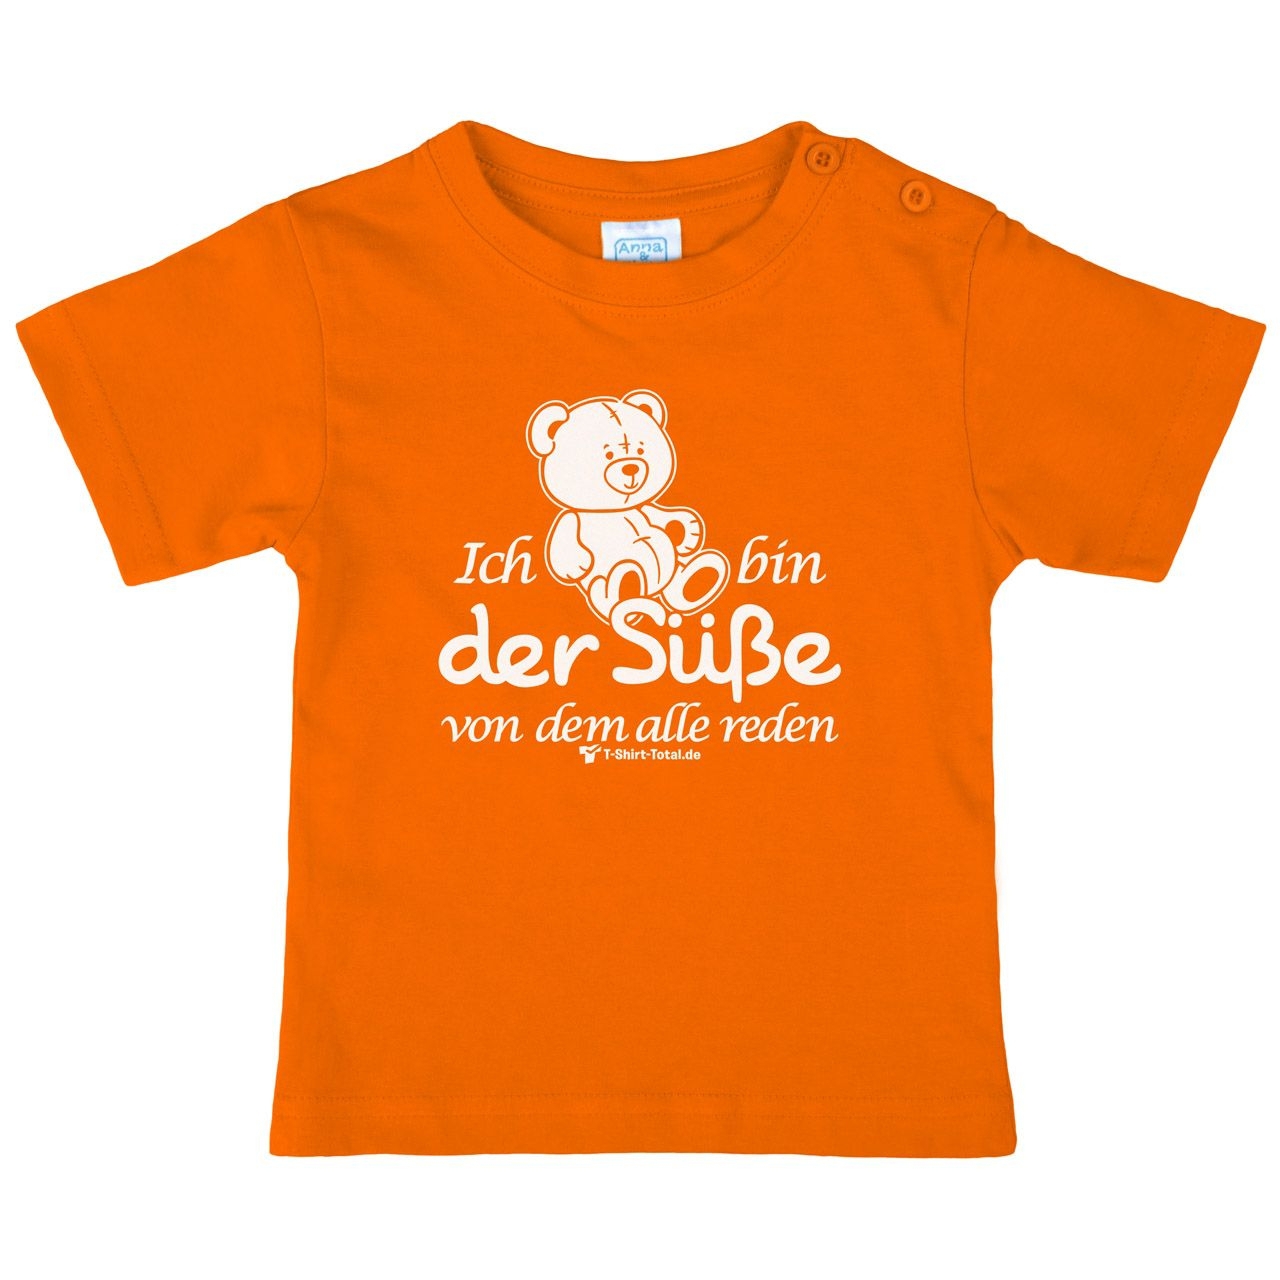 Der Süße Kinder T-Shirt orange 56 / 62